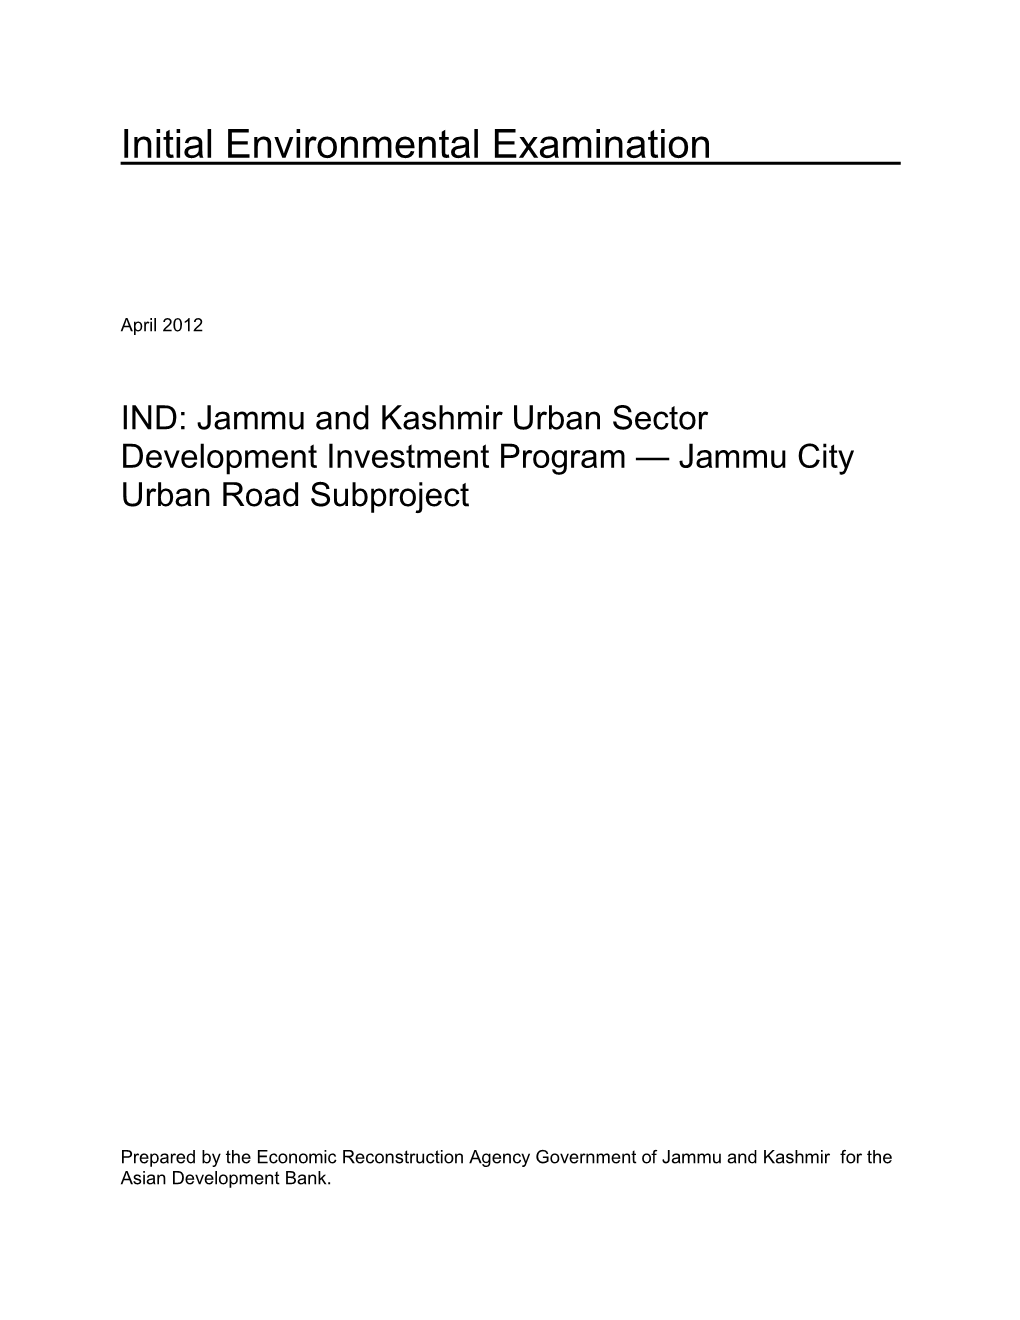 Jammu City Urban Road Subproject, Jammu and Kashmir Urban Sector